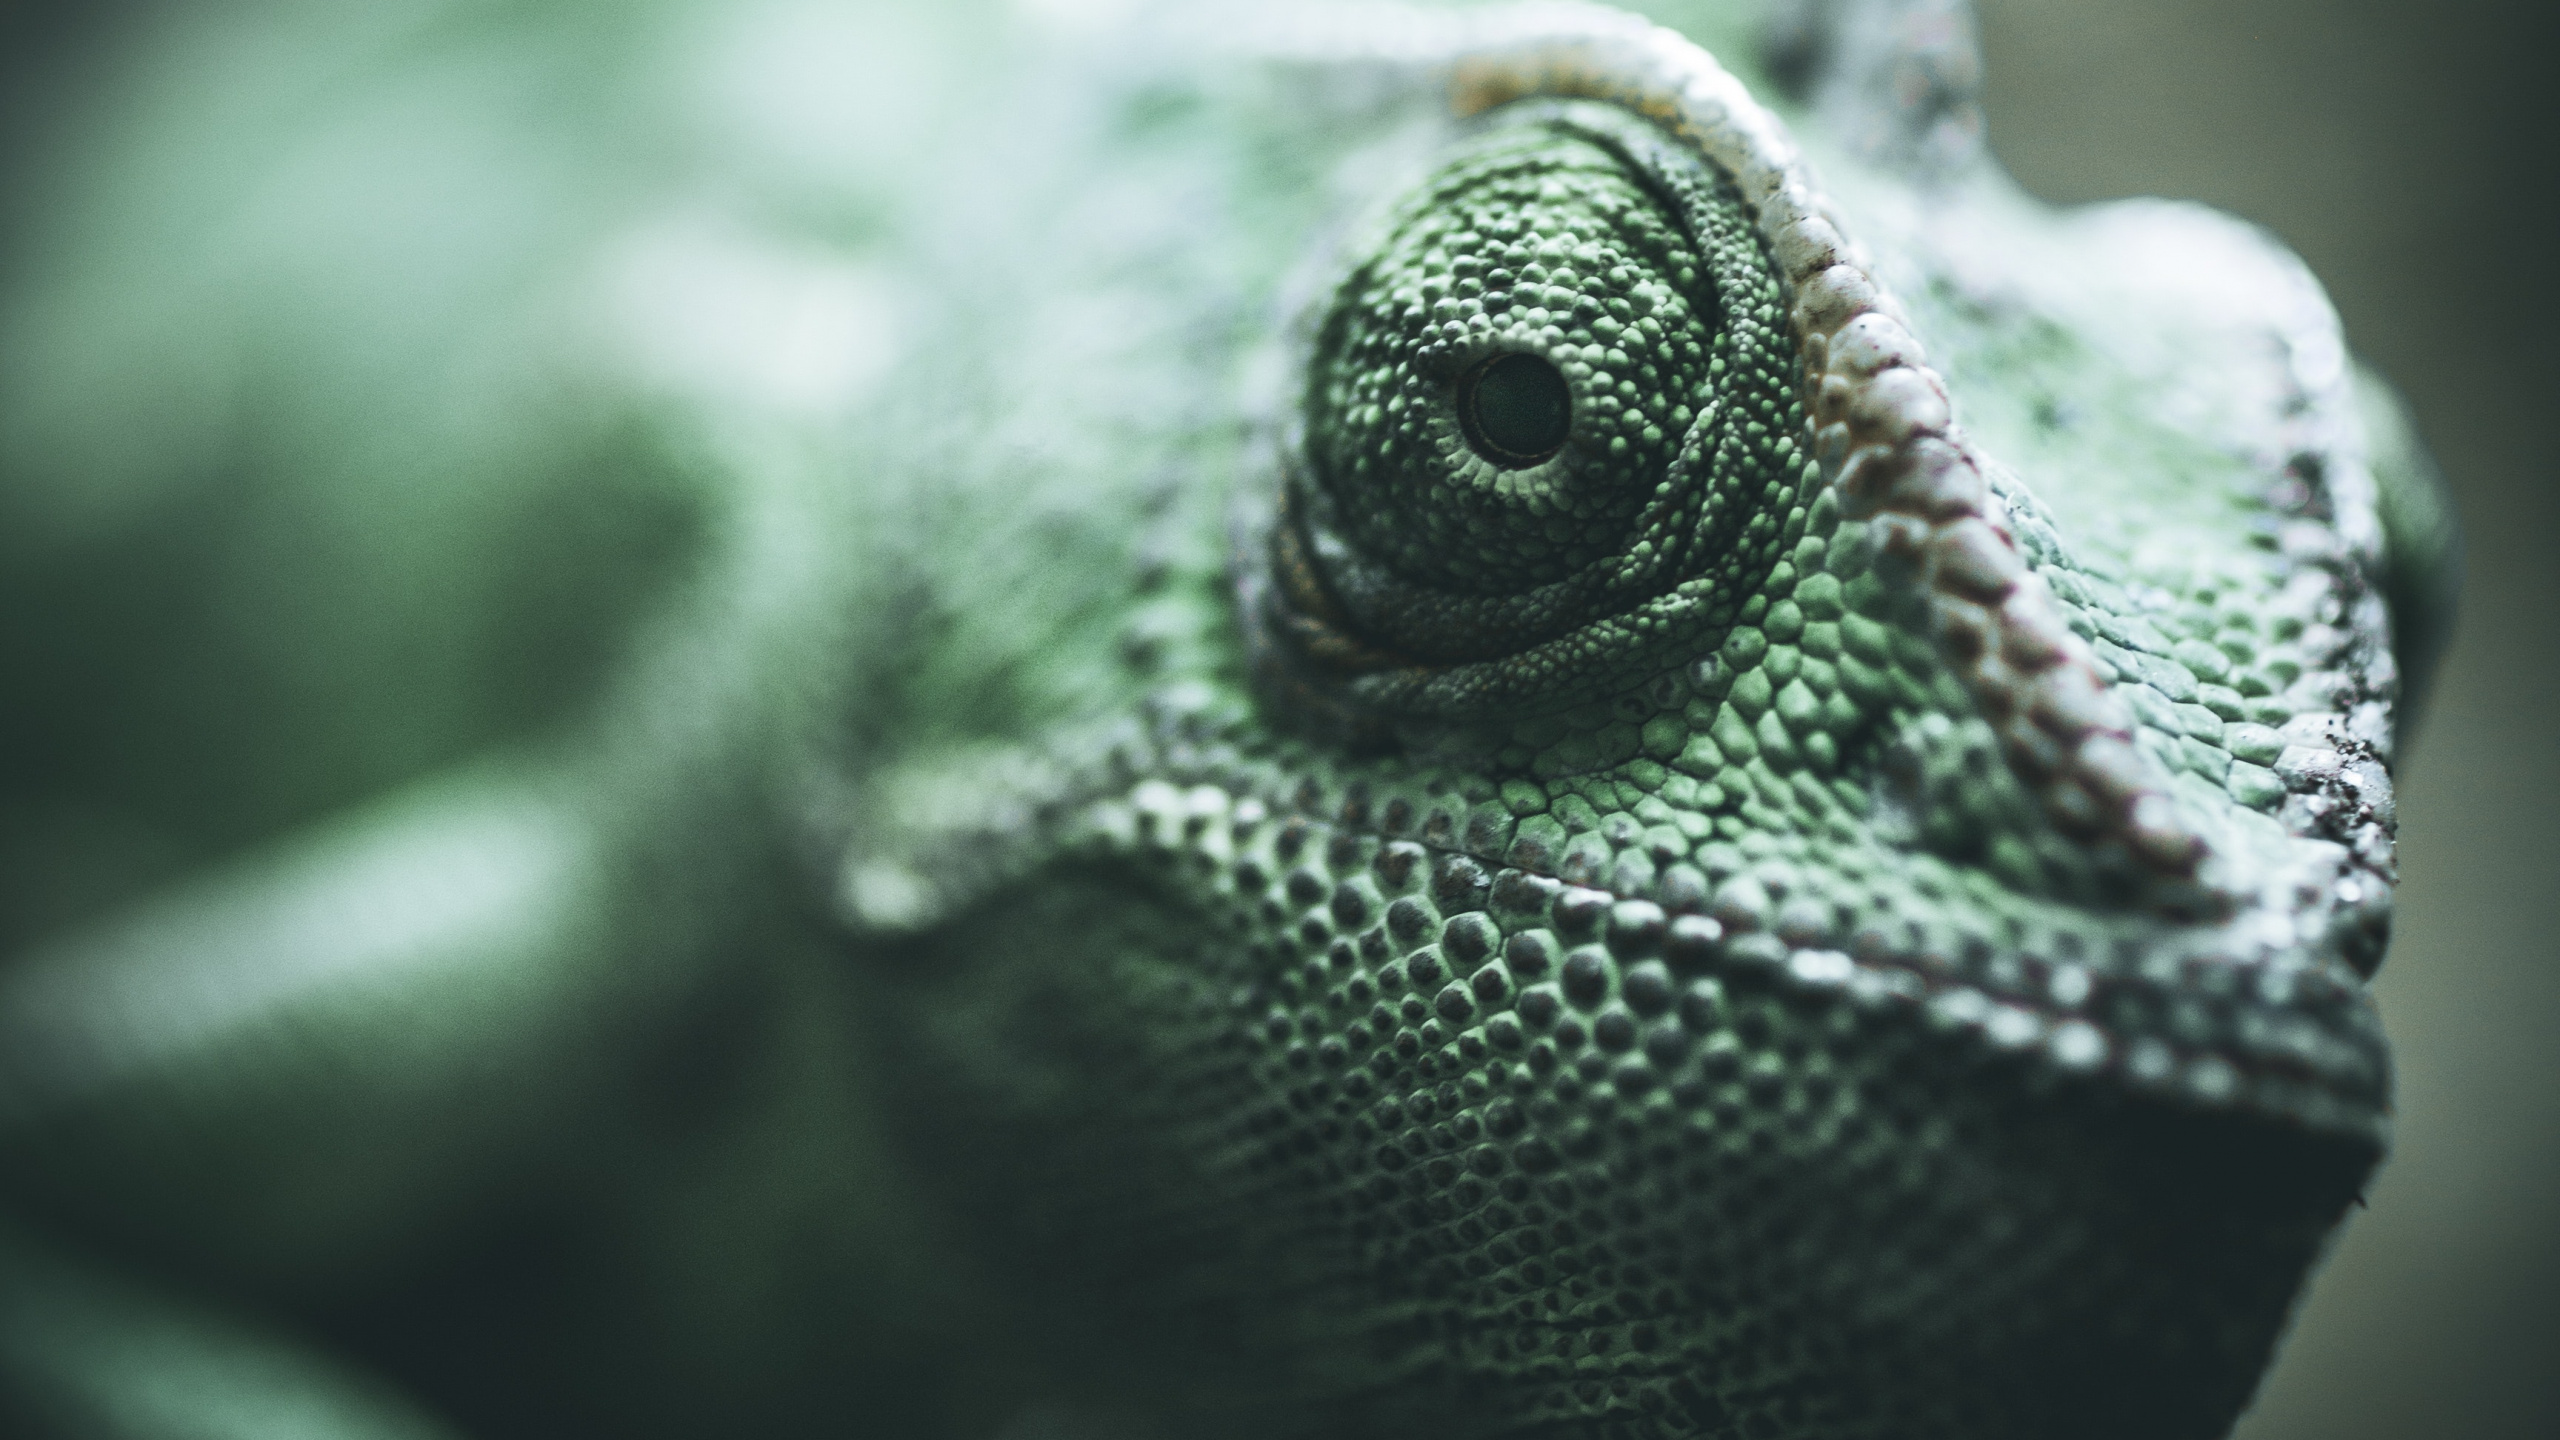 爬行动物, 绿色的, Iguania, 蜥蜴, 缩爬行动物 壁纸 2560x1440 允许